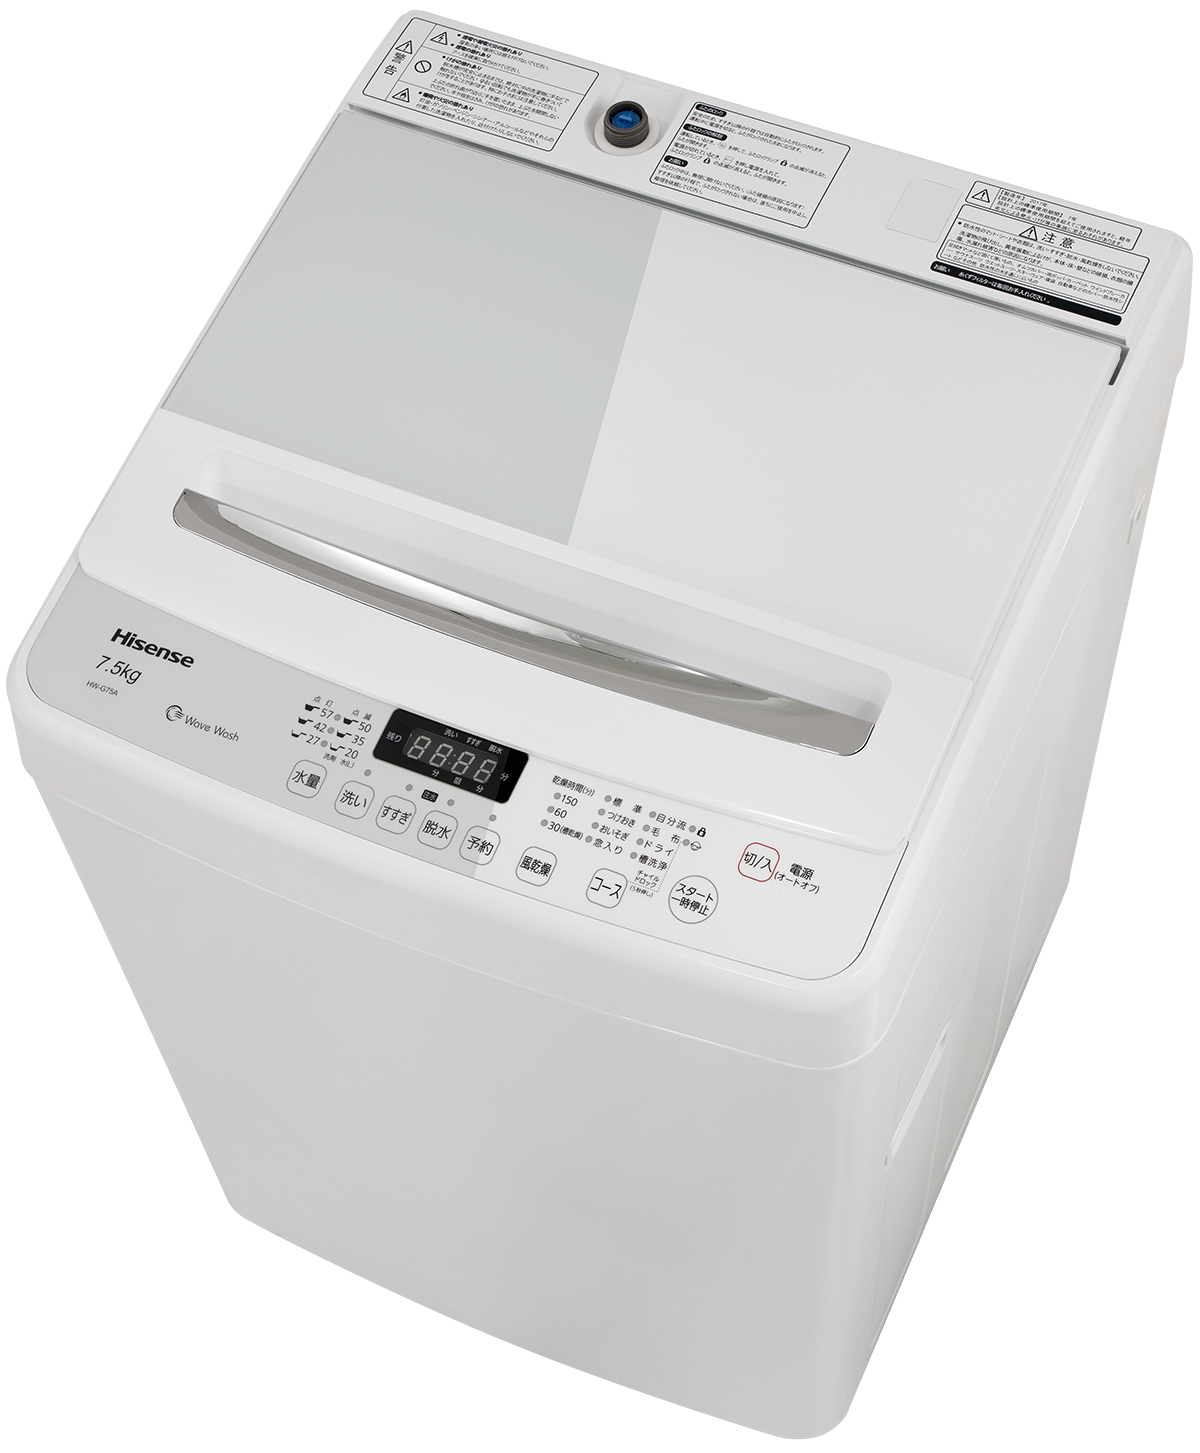 送料込! Hisense 全自動洗濯機 7.5㎏ 2018年製 HW-G75A一人暮らし - 洗濯機